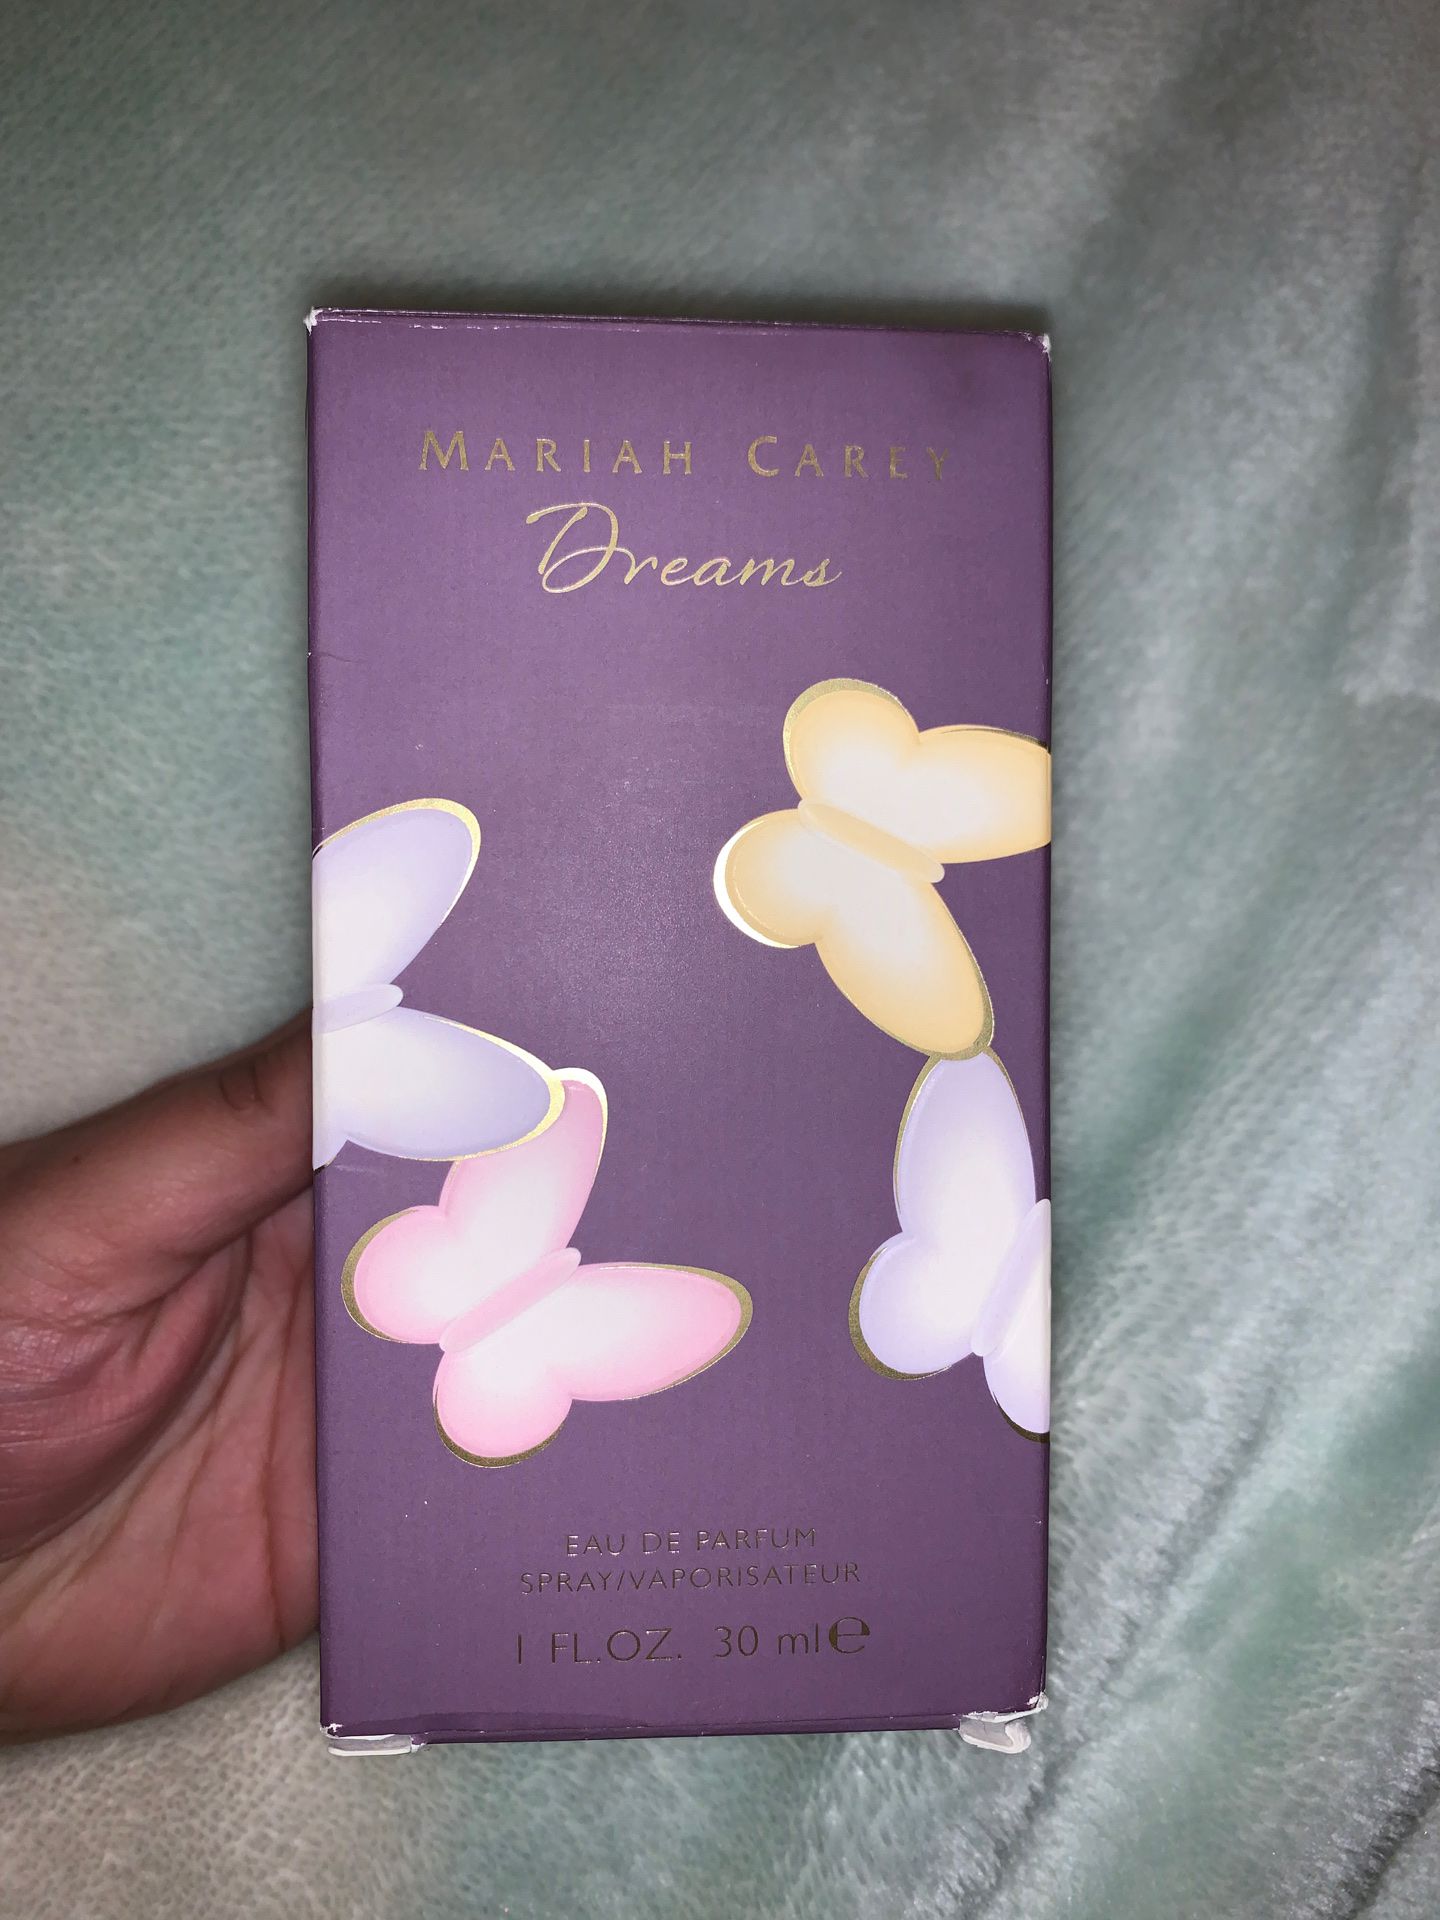 Mariah Carey Dreams perfume